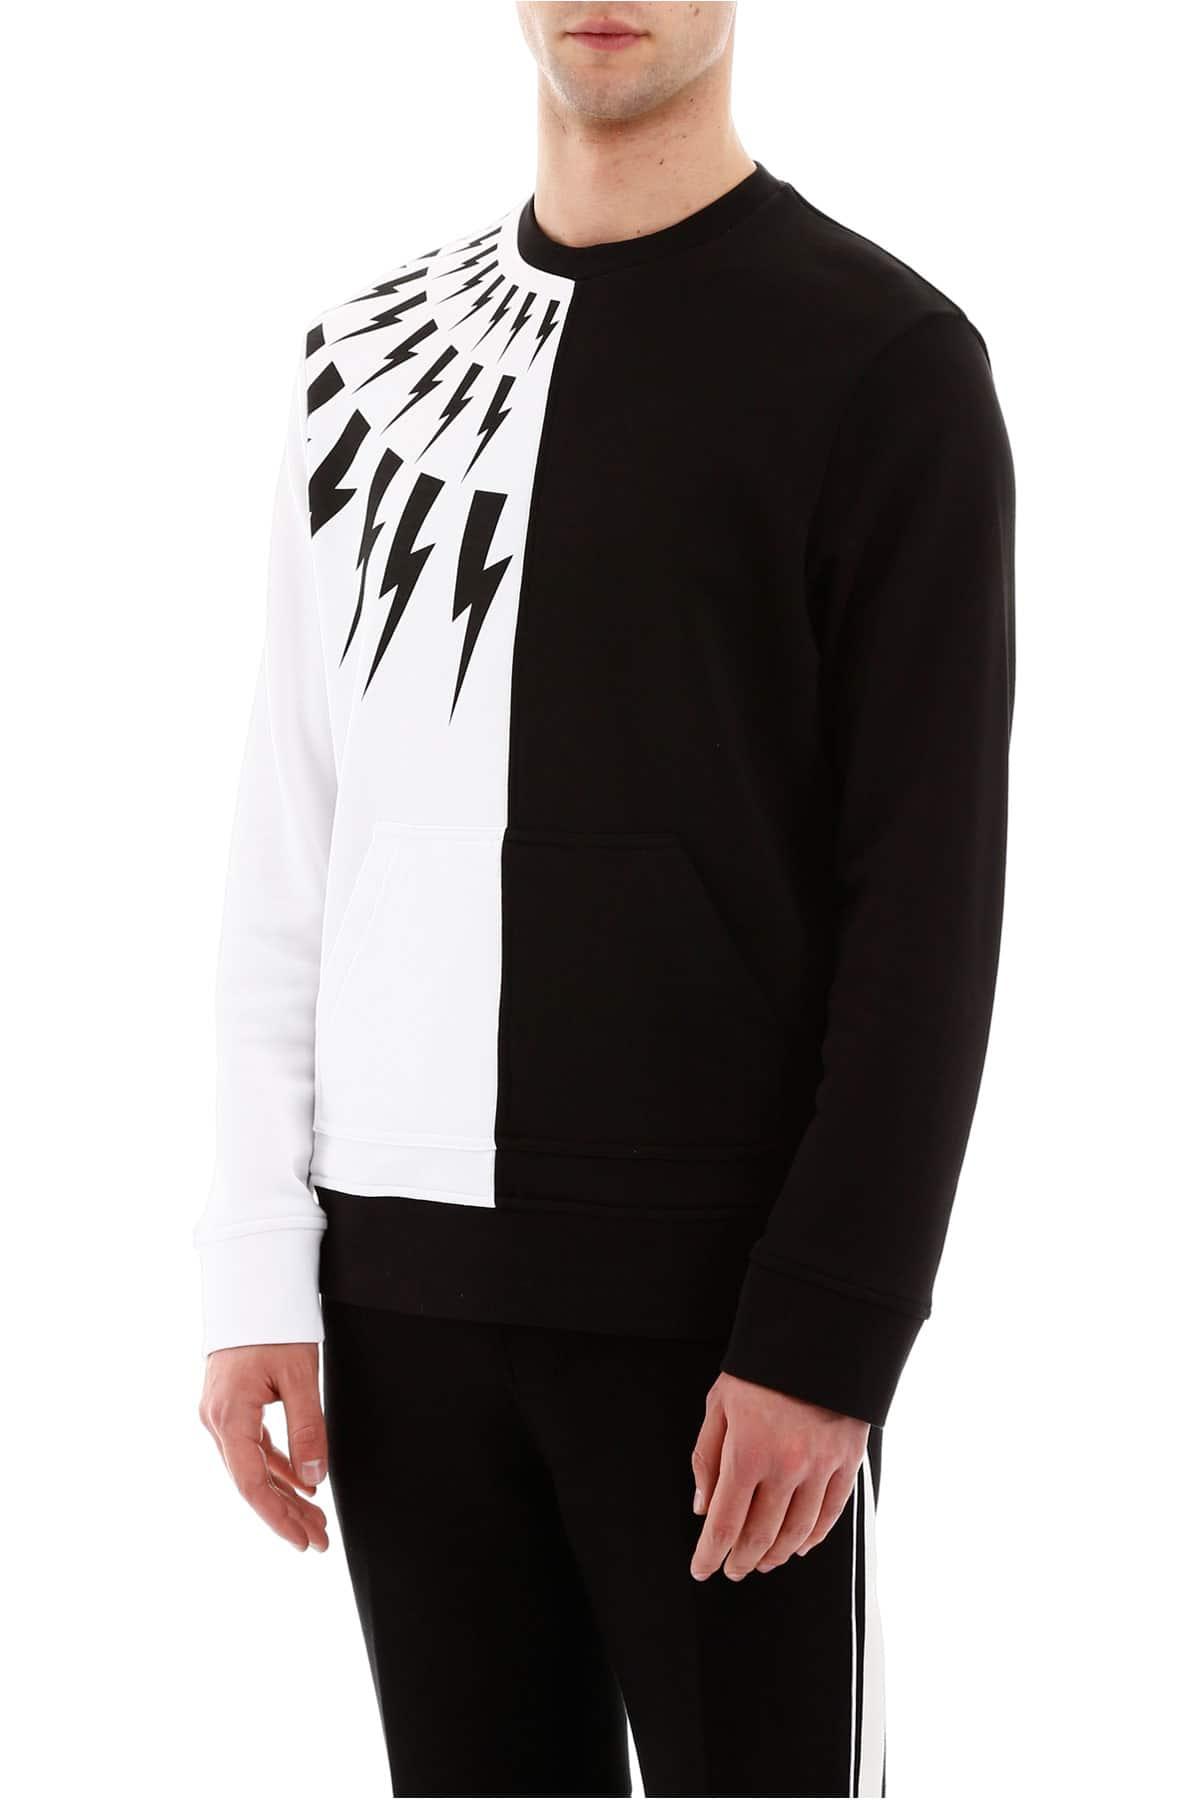 Neil Barrett Thunder Bolt Print Sweater in White,Black (Black) for Men ...